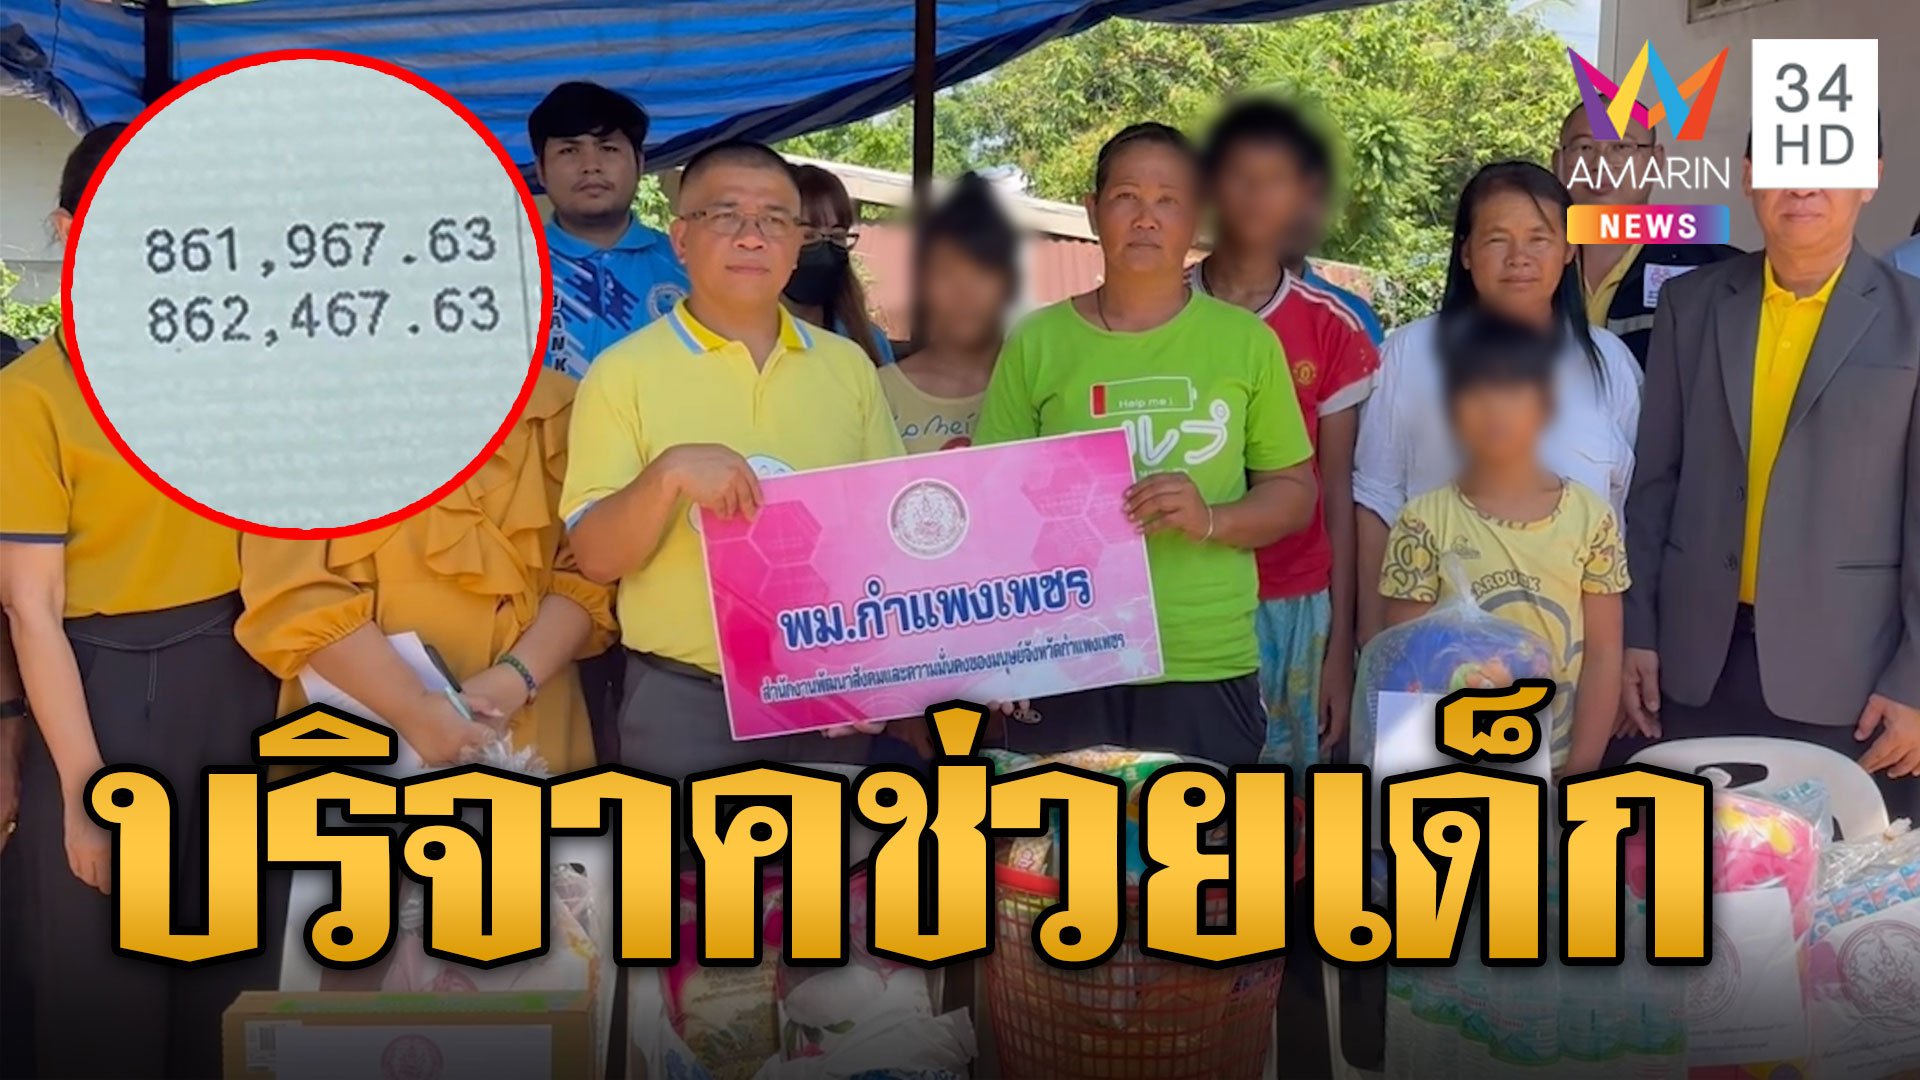 แม่น้ำตาปริ่ม! ยอดเงินคนไทยบริจาคเฉียดล้าน ช่วยลูกวัย 13 ป่วยมะเร็ง | ข่าวอรุณอมรินทร์ | 14 พ.ค. 67 | AMARIN TVHD34